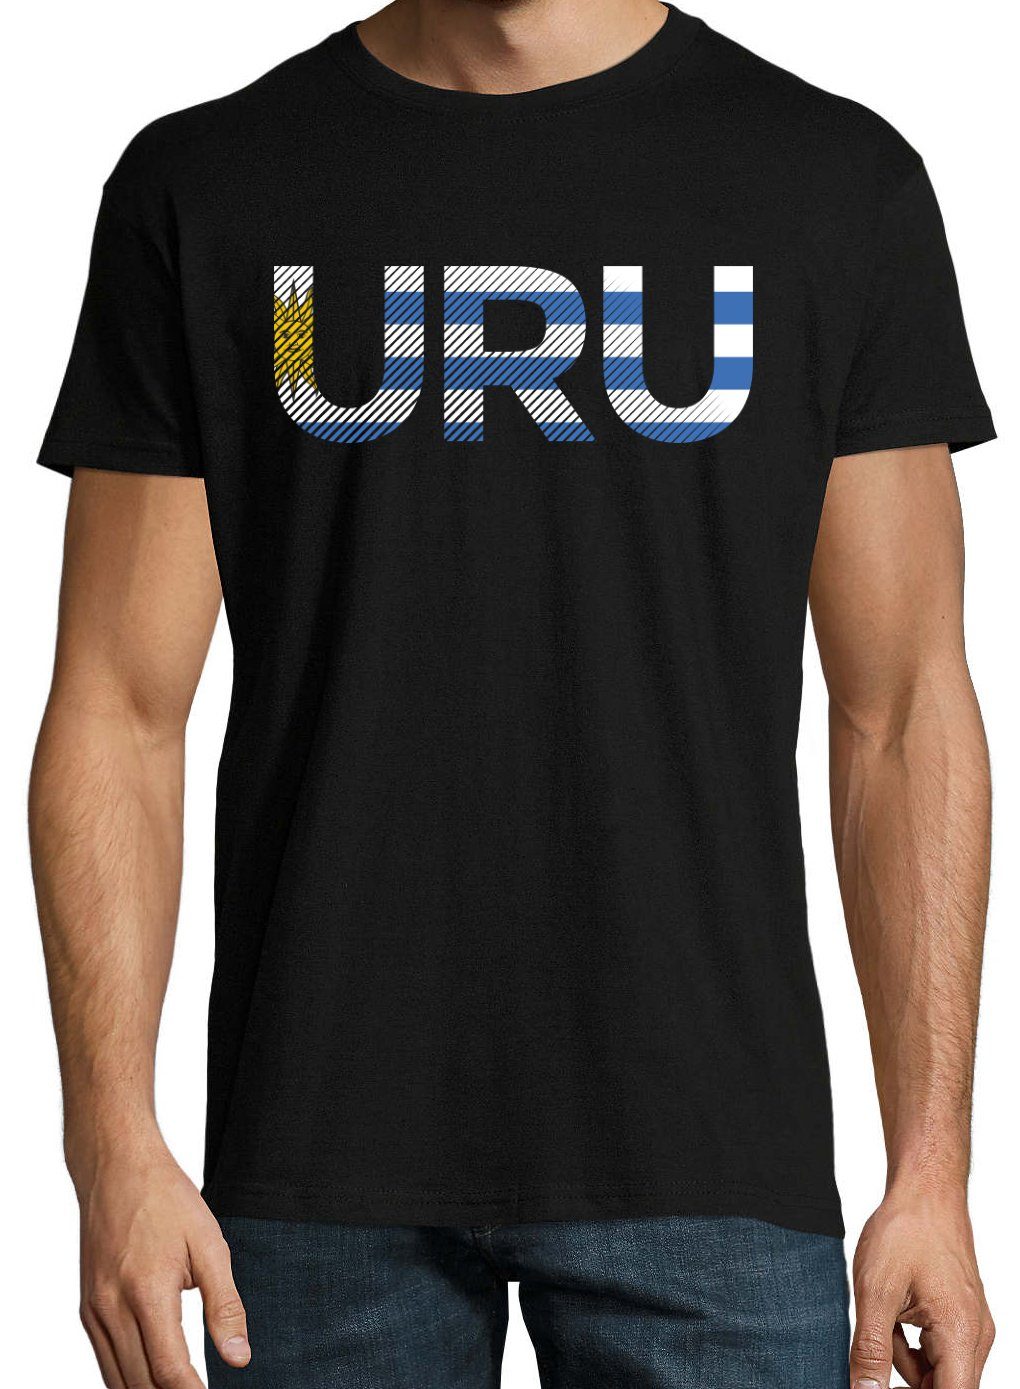 Youth Designz Uruguay mit Schwarz Frontprint im Fußball T-Shirt T-Shirt Look URU Herren